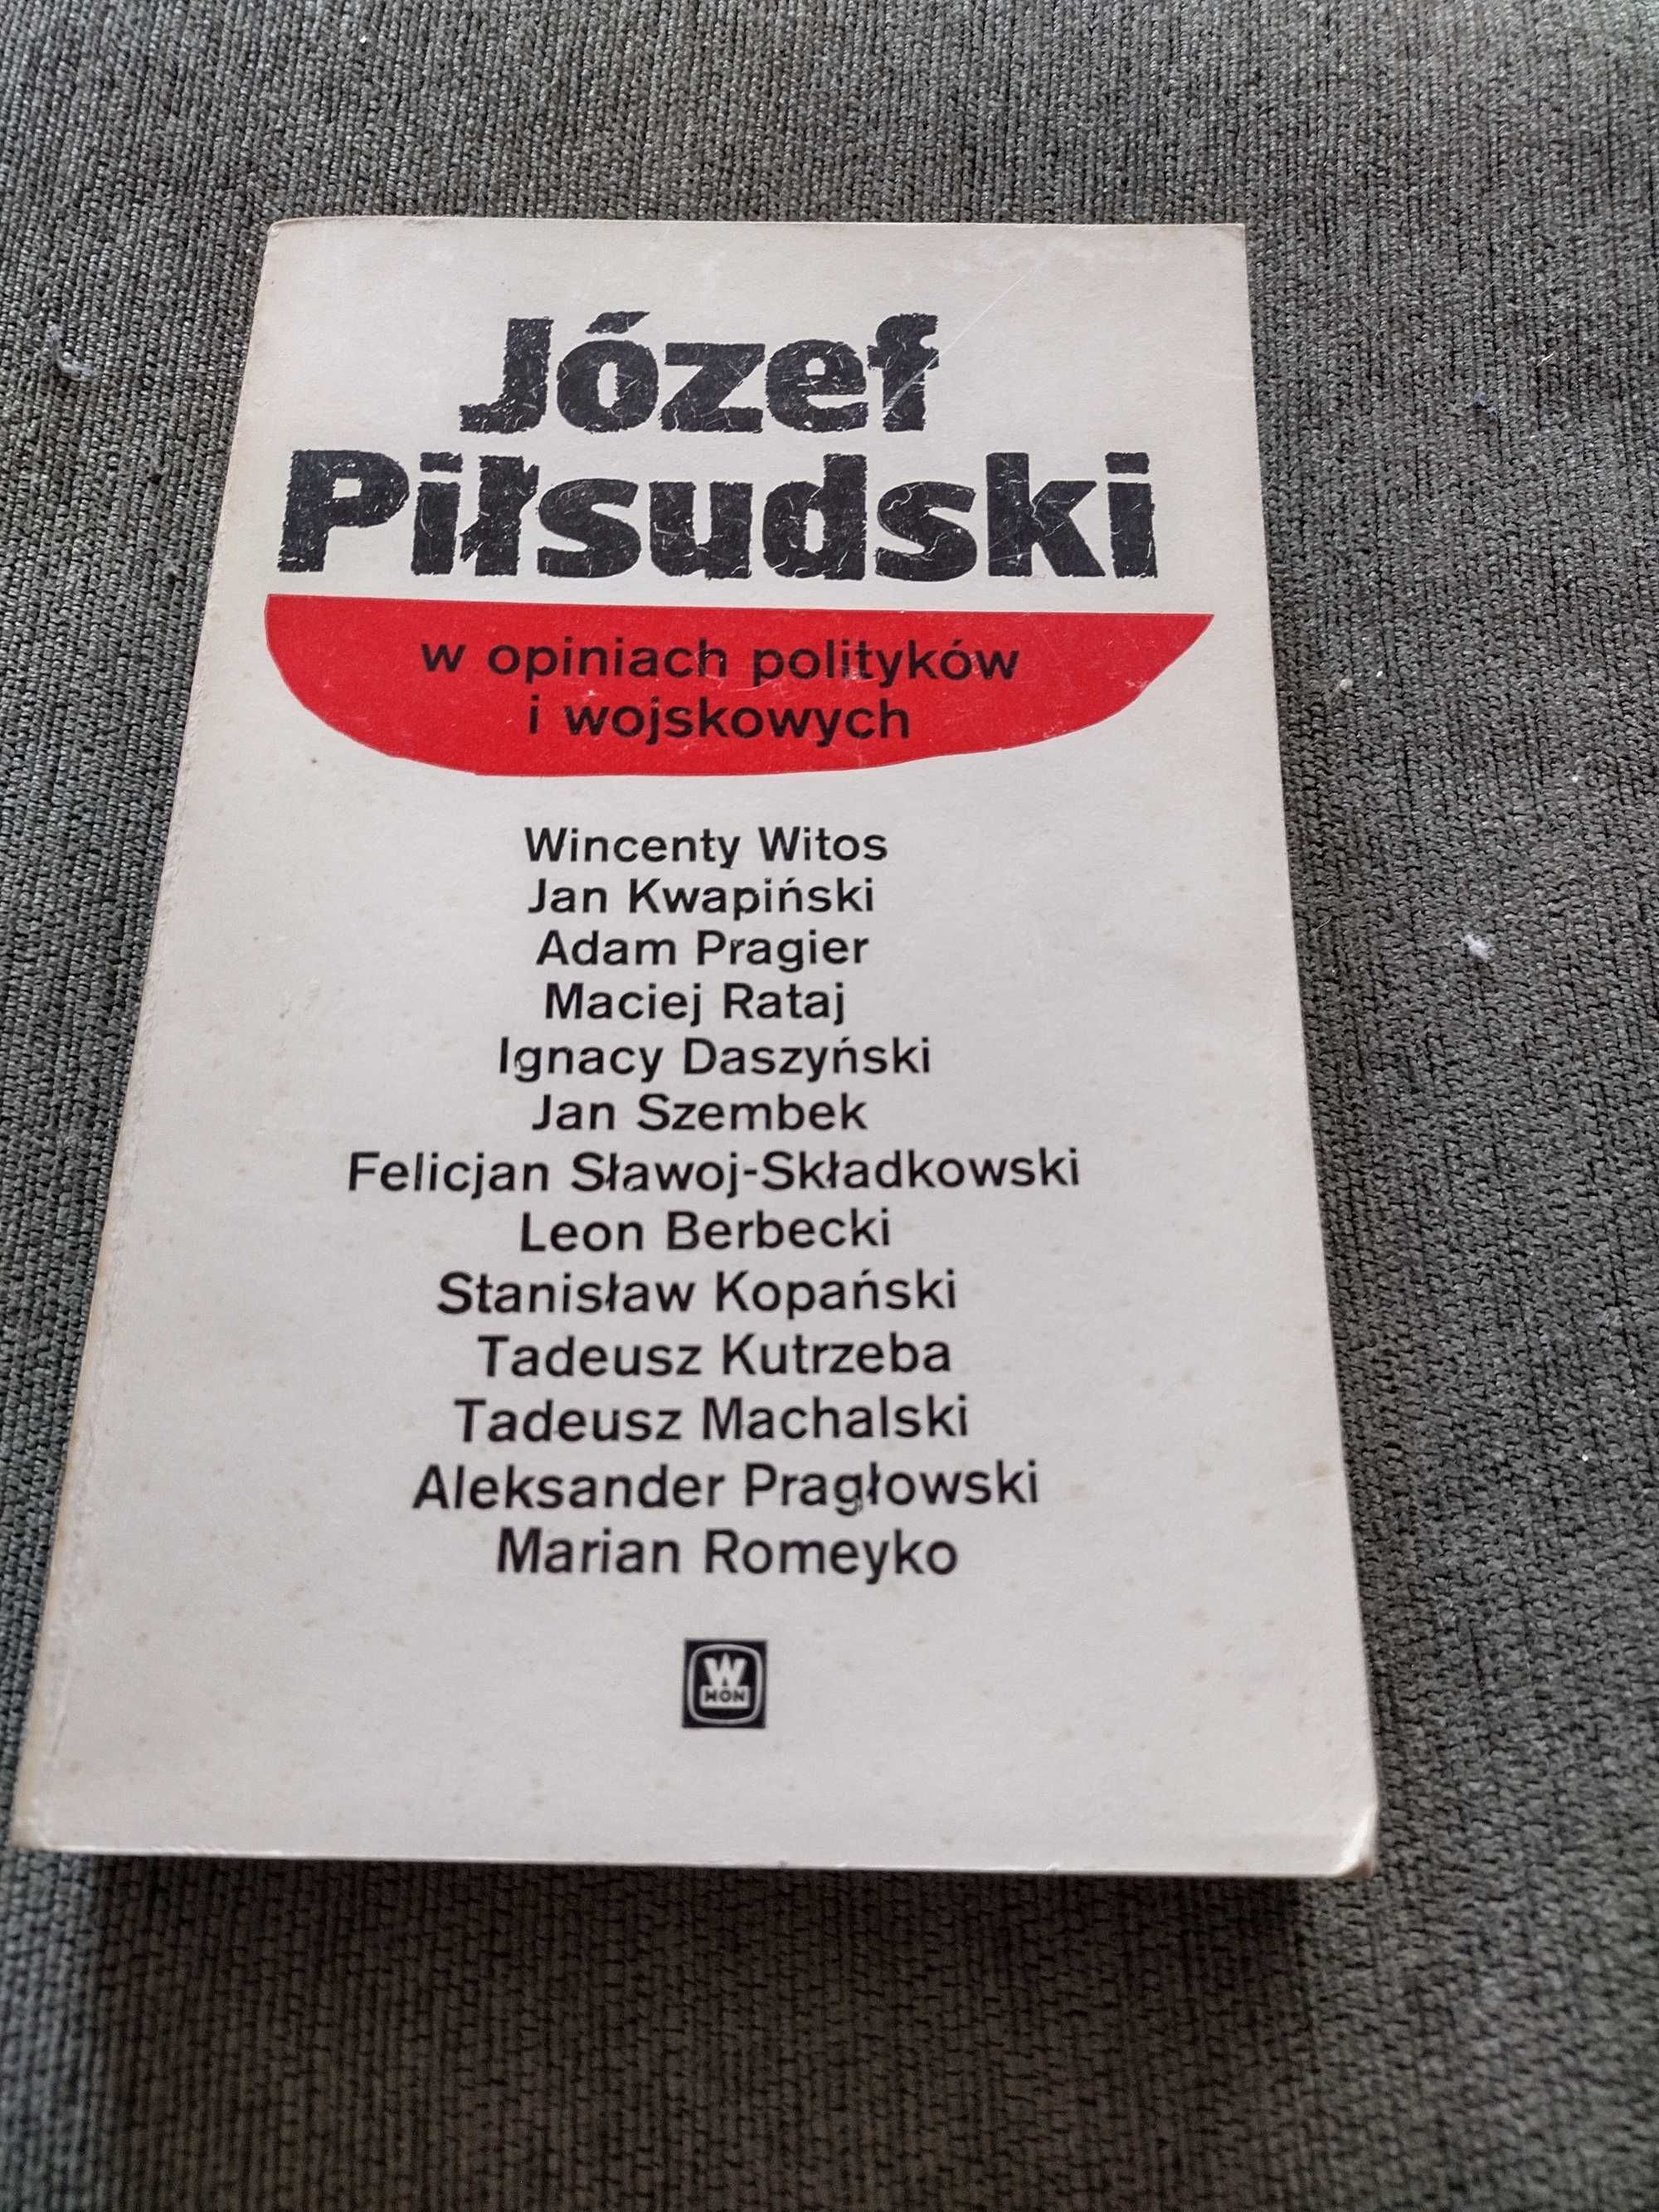 "Józef Piłsudski w opiniach polityków i wojskowych"